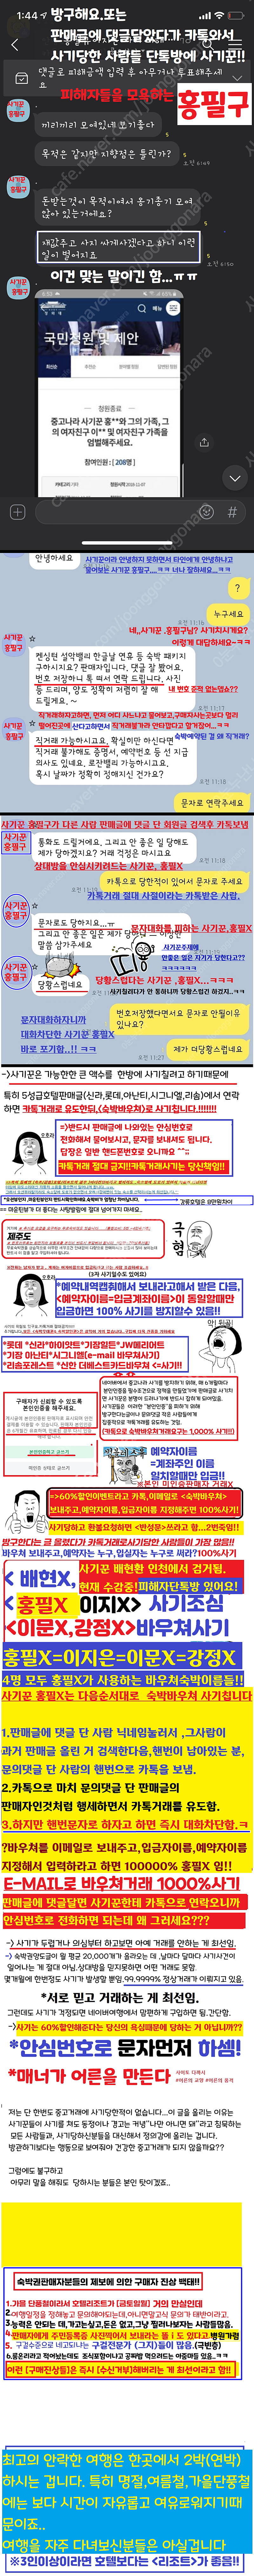 사기꾼 검거소식 (이제 홍필구만 잡으면 됩니다!!.카톡거래 절대금지!!)